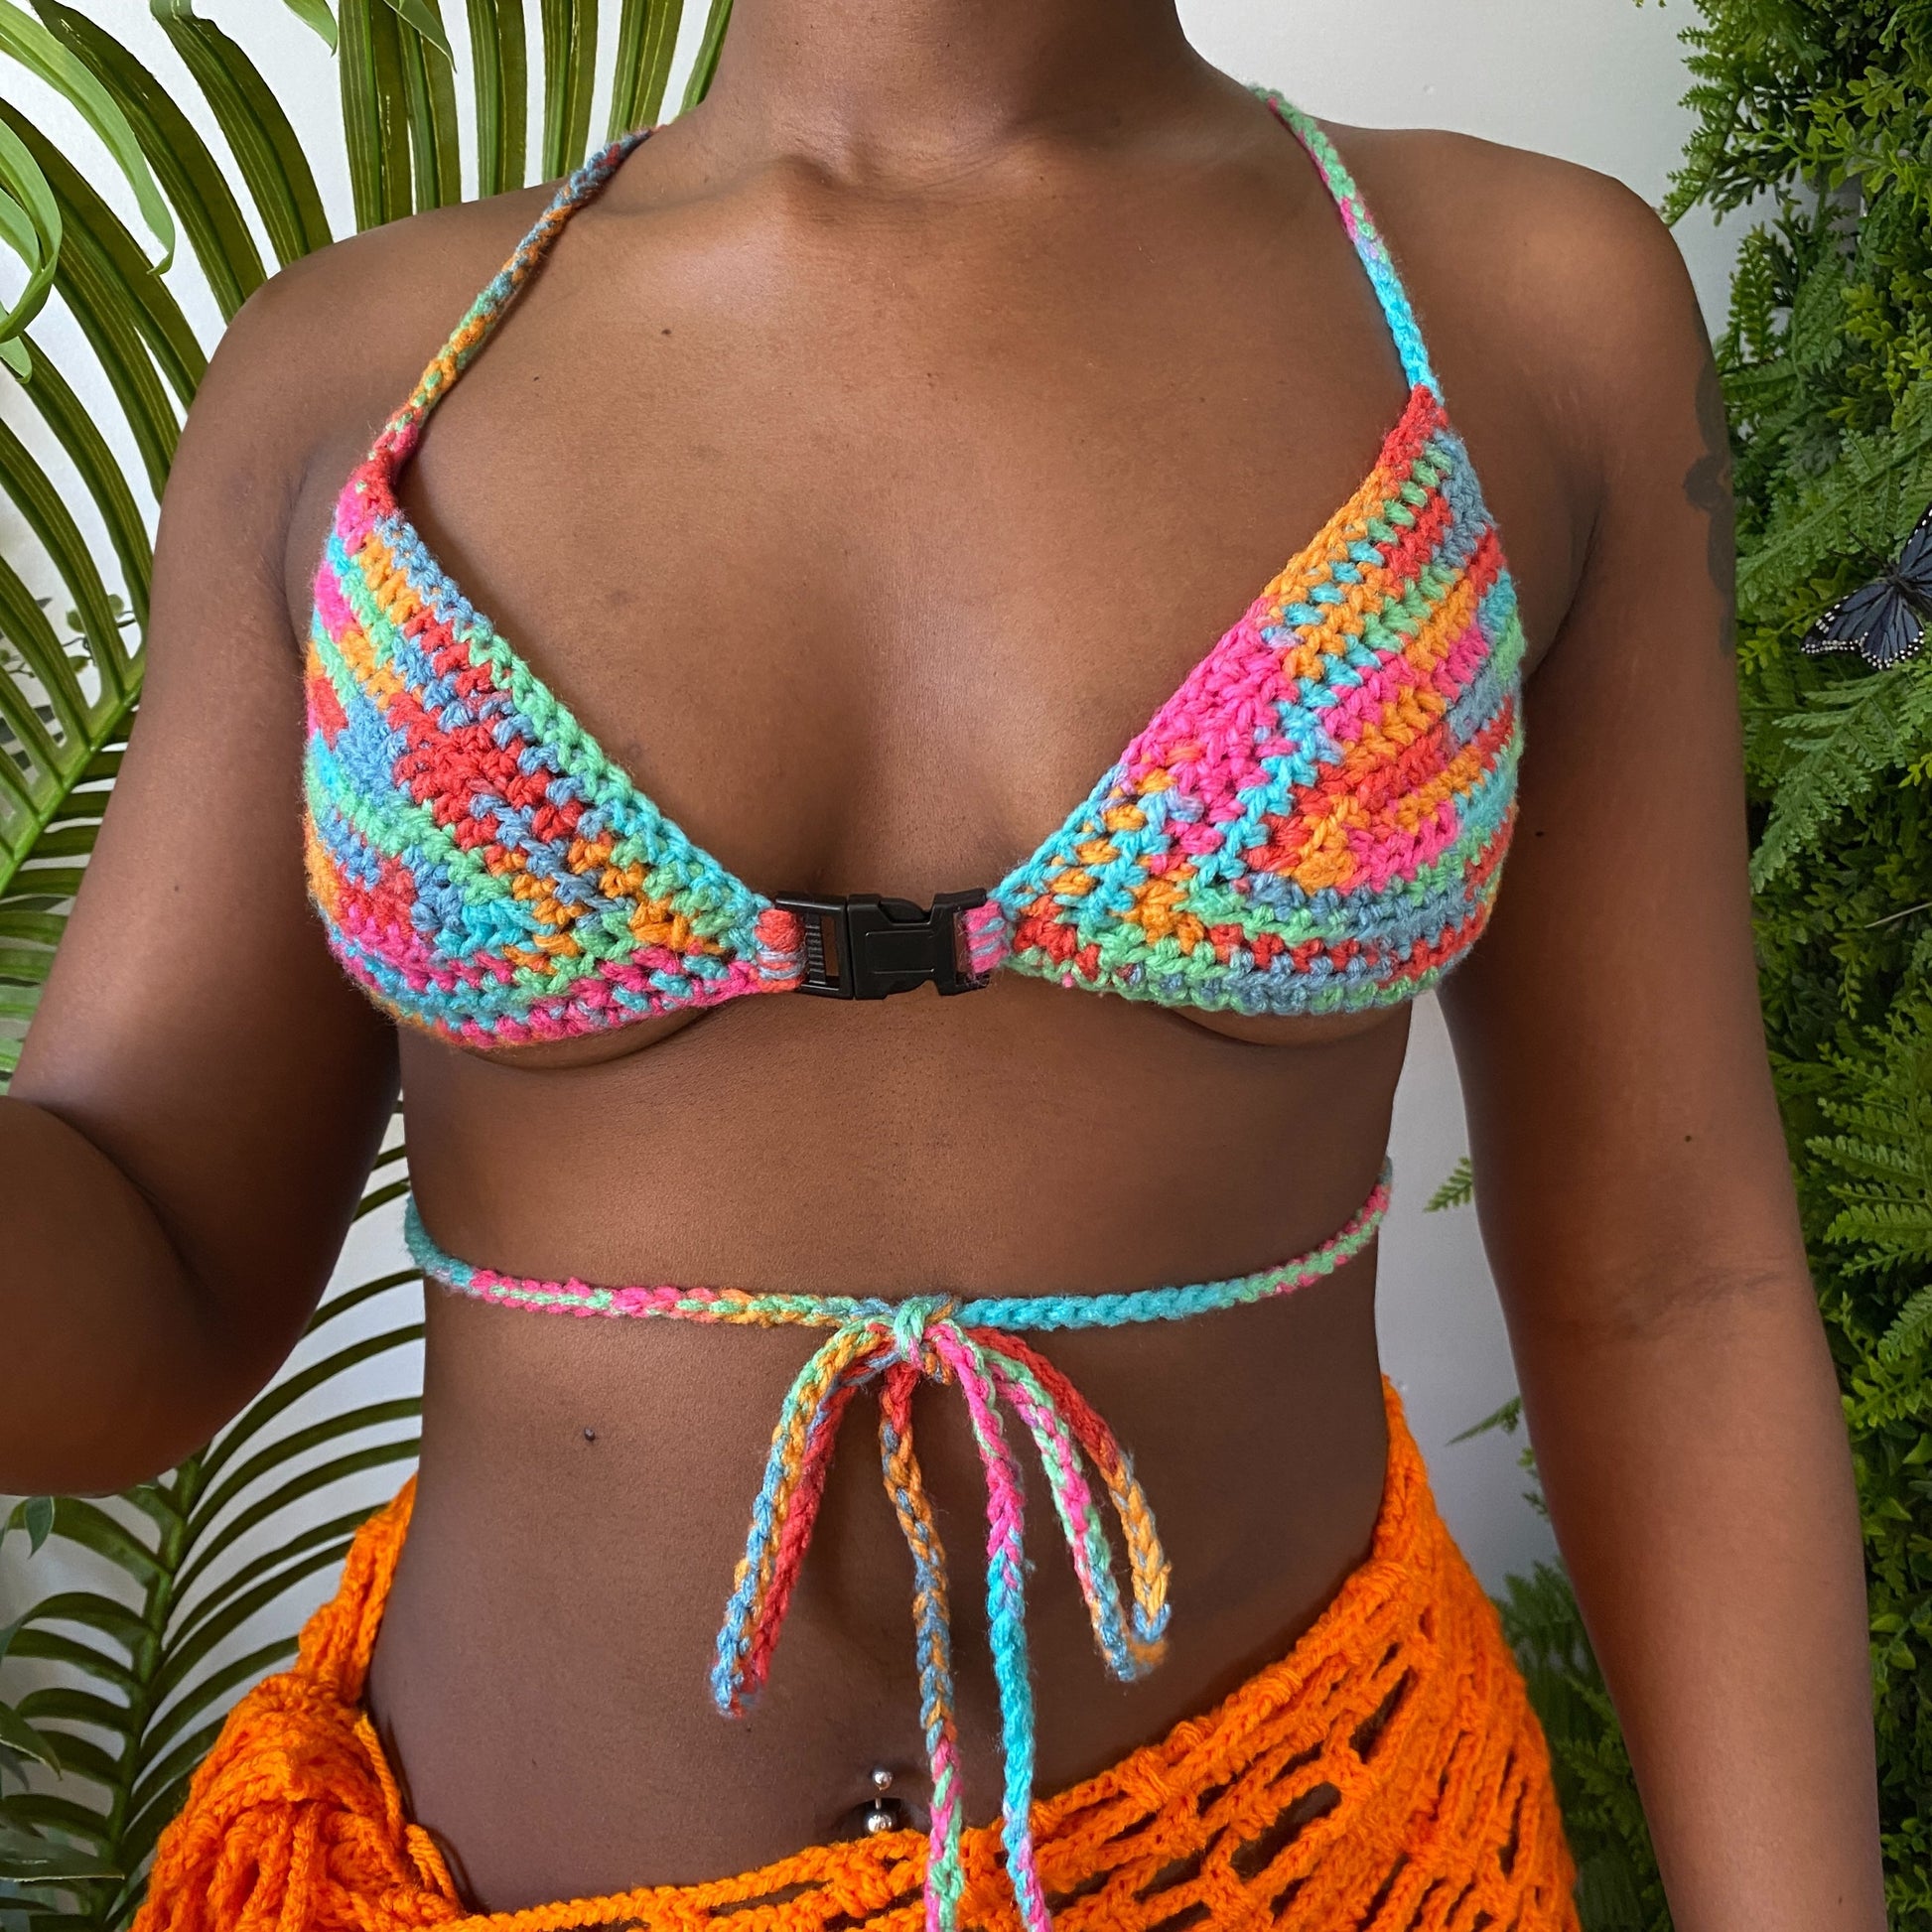 Crochet Bikinis: Where to Buy for Spring & Summer